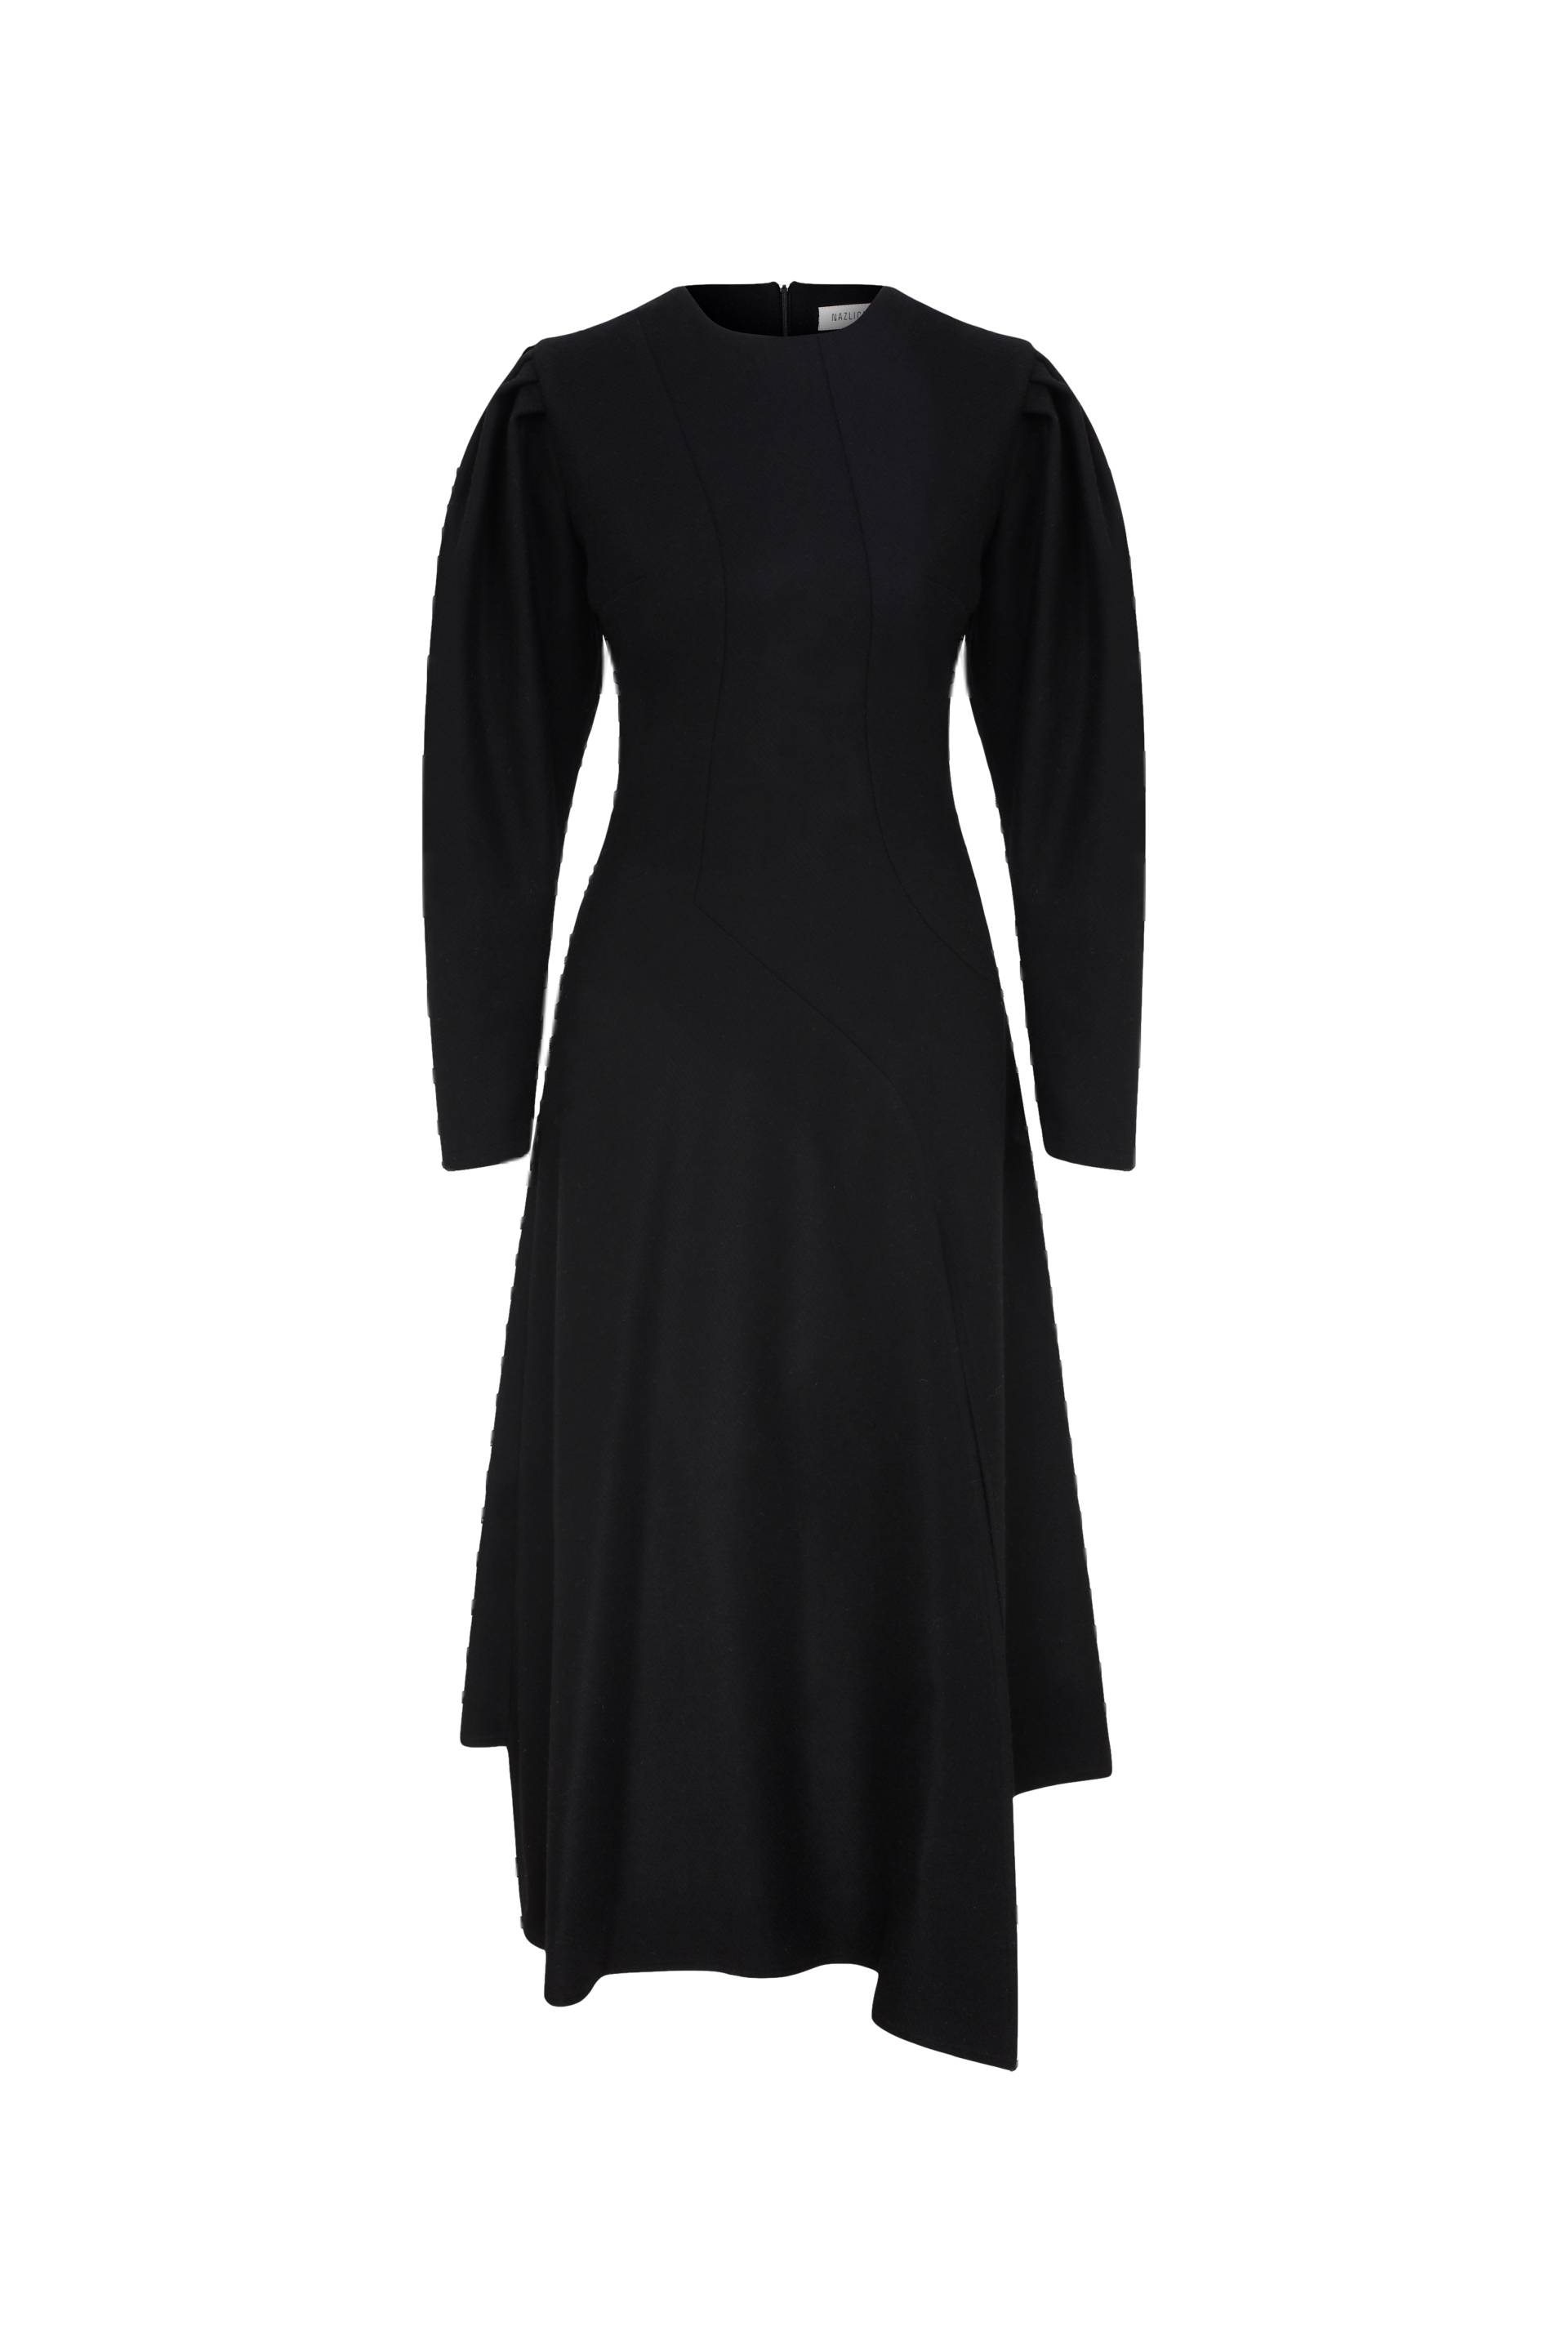 Bitte Midi Dress in Black von Nazli Ceren